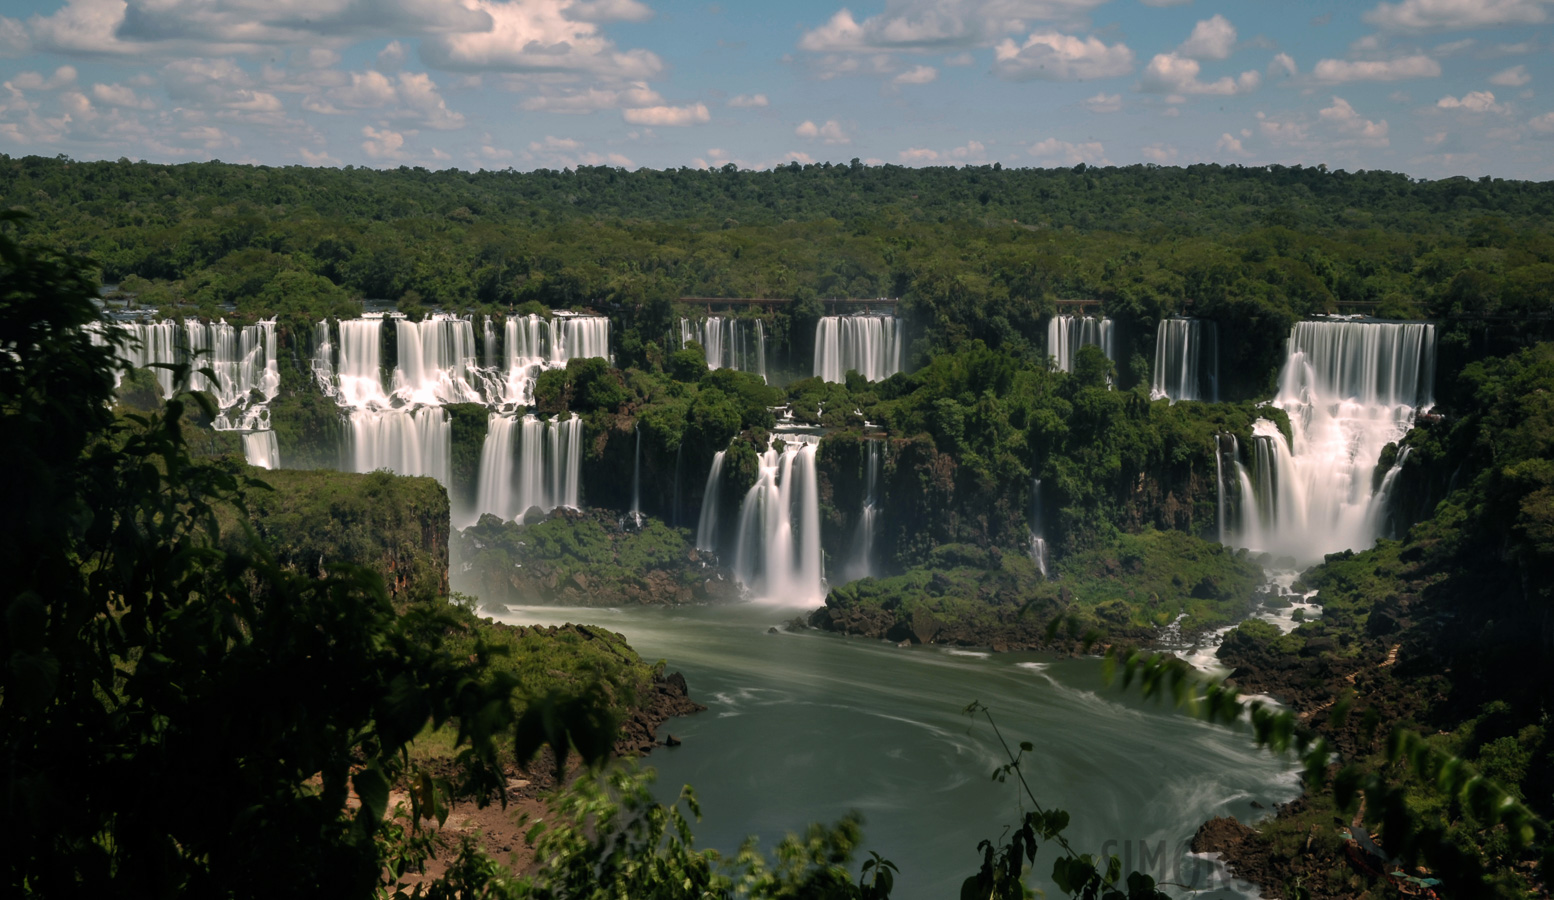 Cataratas del Iguazu [48 mm, 30.0 Sek. bei f / 25, ISO 100]